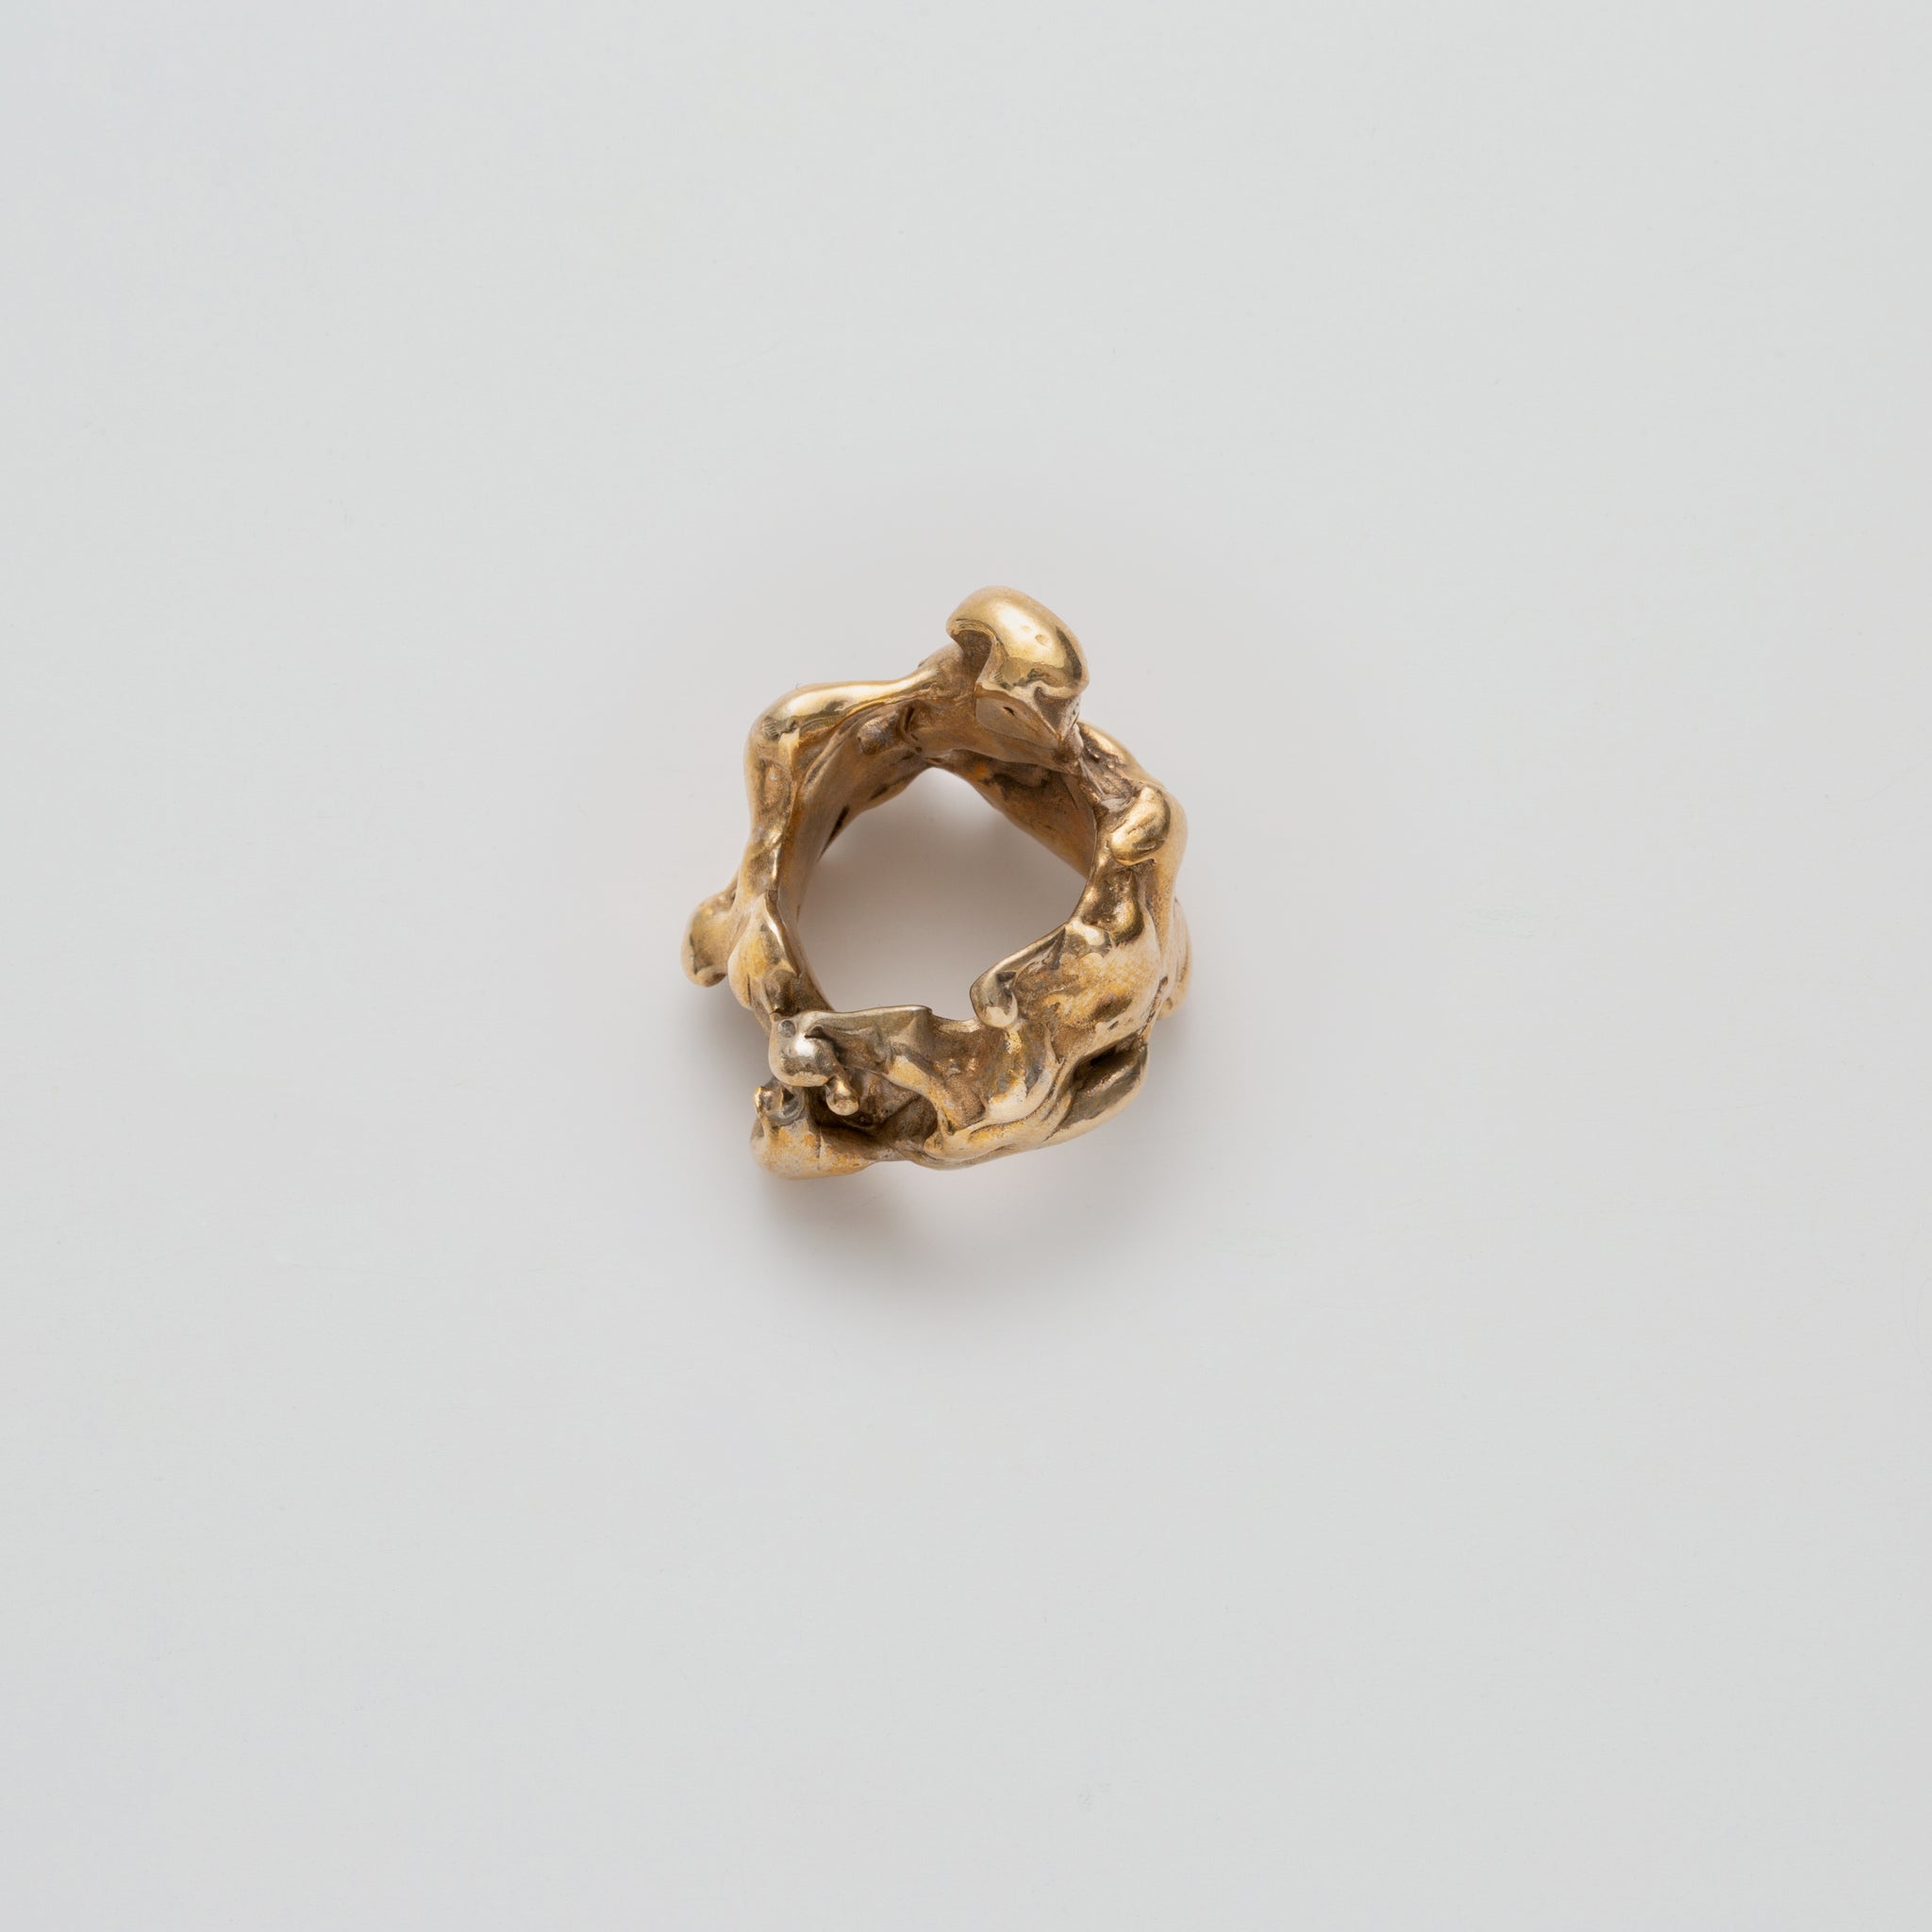 Chunky Wabi Sabi Ring in Bronze